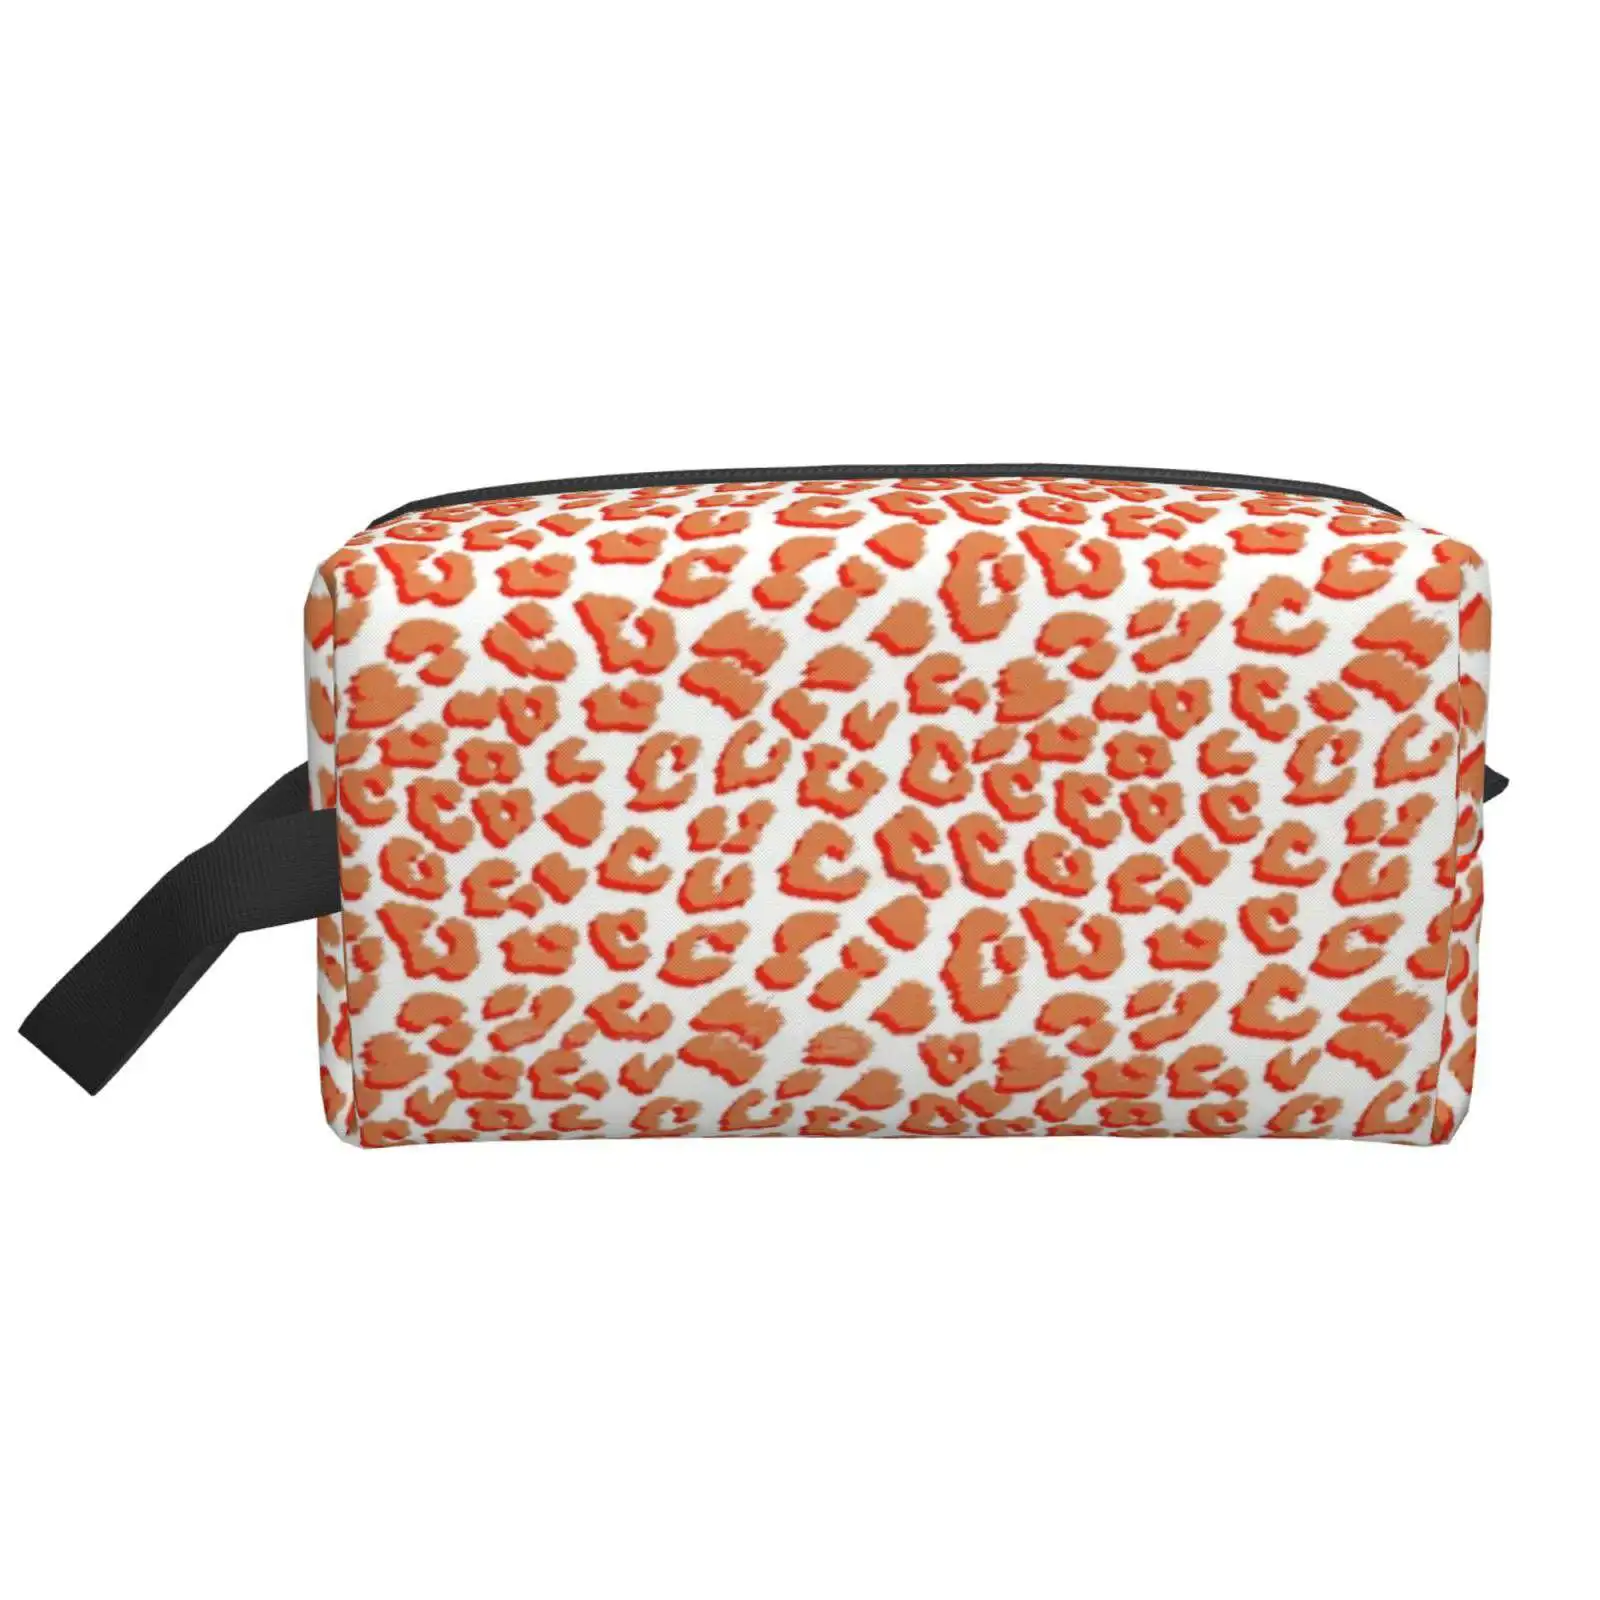 

Дорожные спортивные сумки для хранения с коралловым и леопардовым принтом животных, большие размеры, коралловый и оранжевый узор, бесшовны...